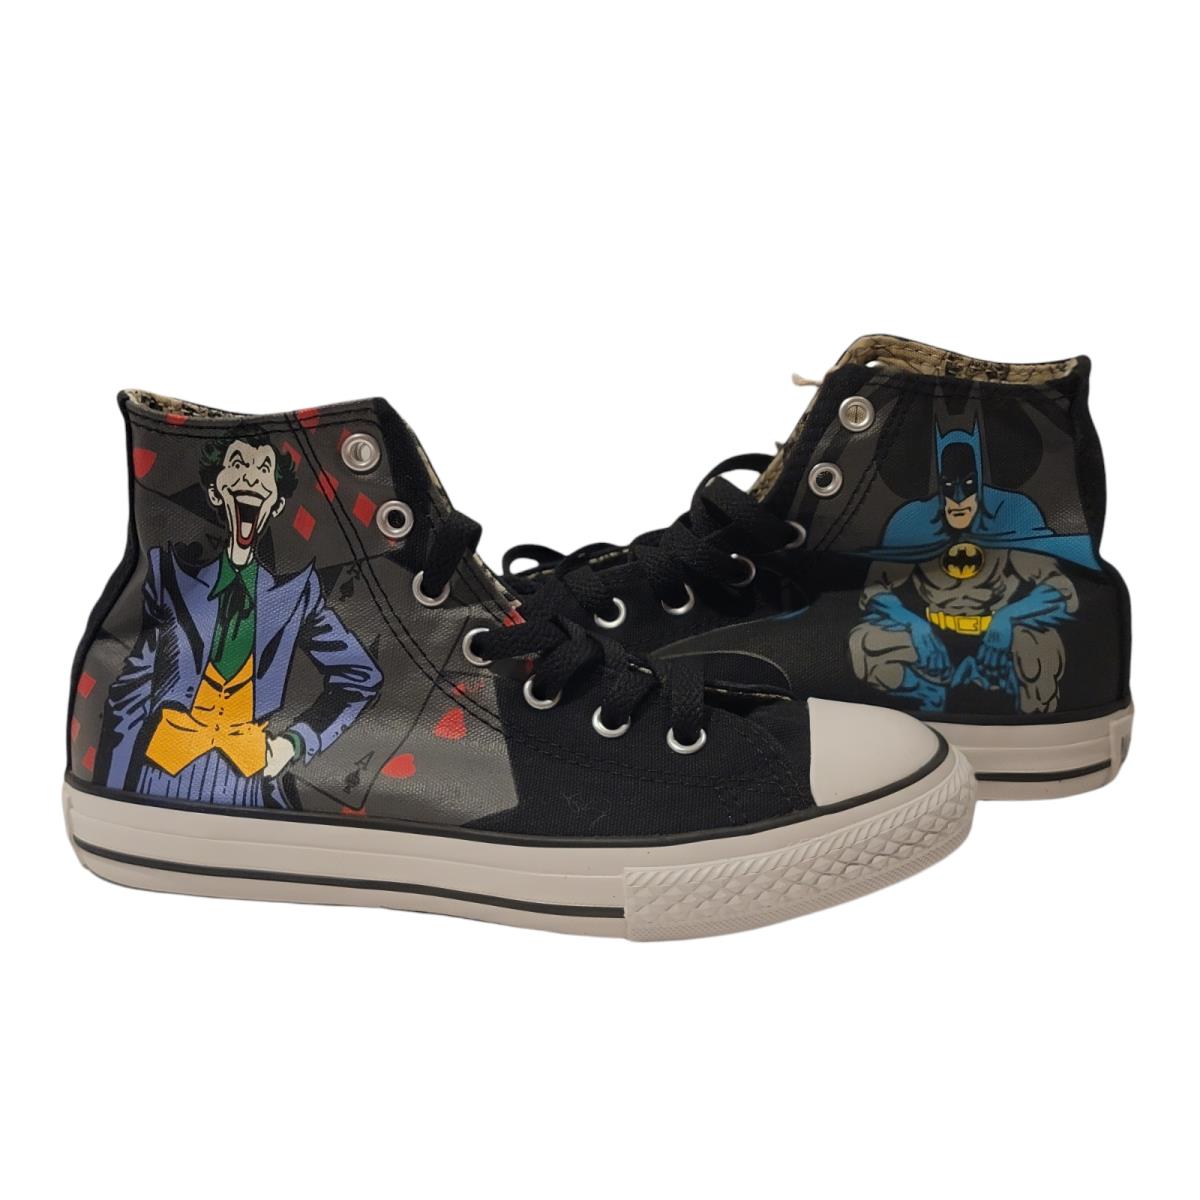 Converse All Star Joker Batman Boys Skate Shoes Size 2 Black DC Comics Originals